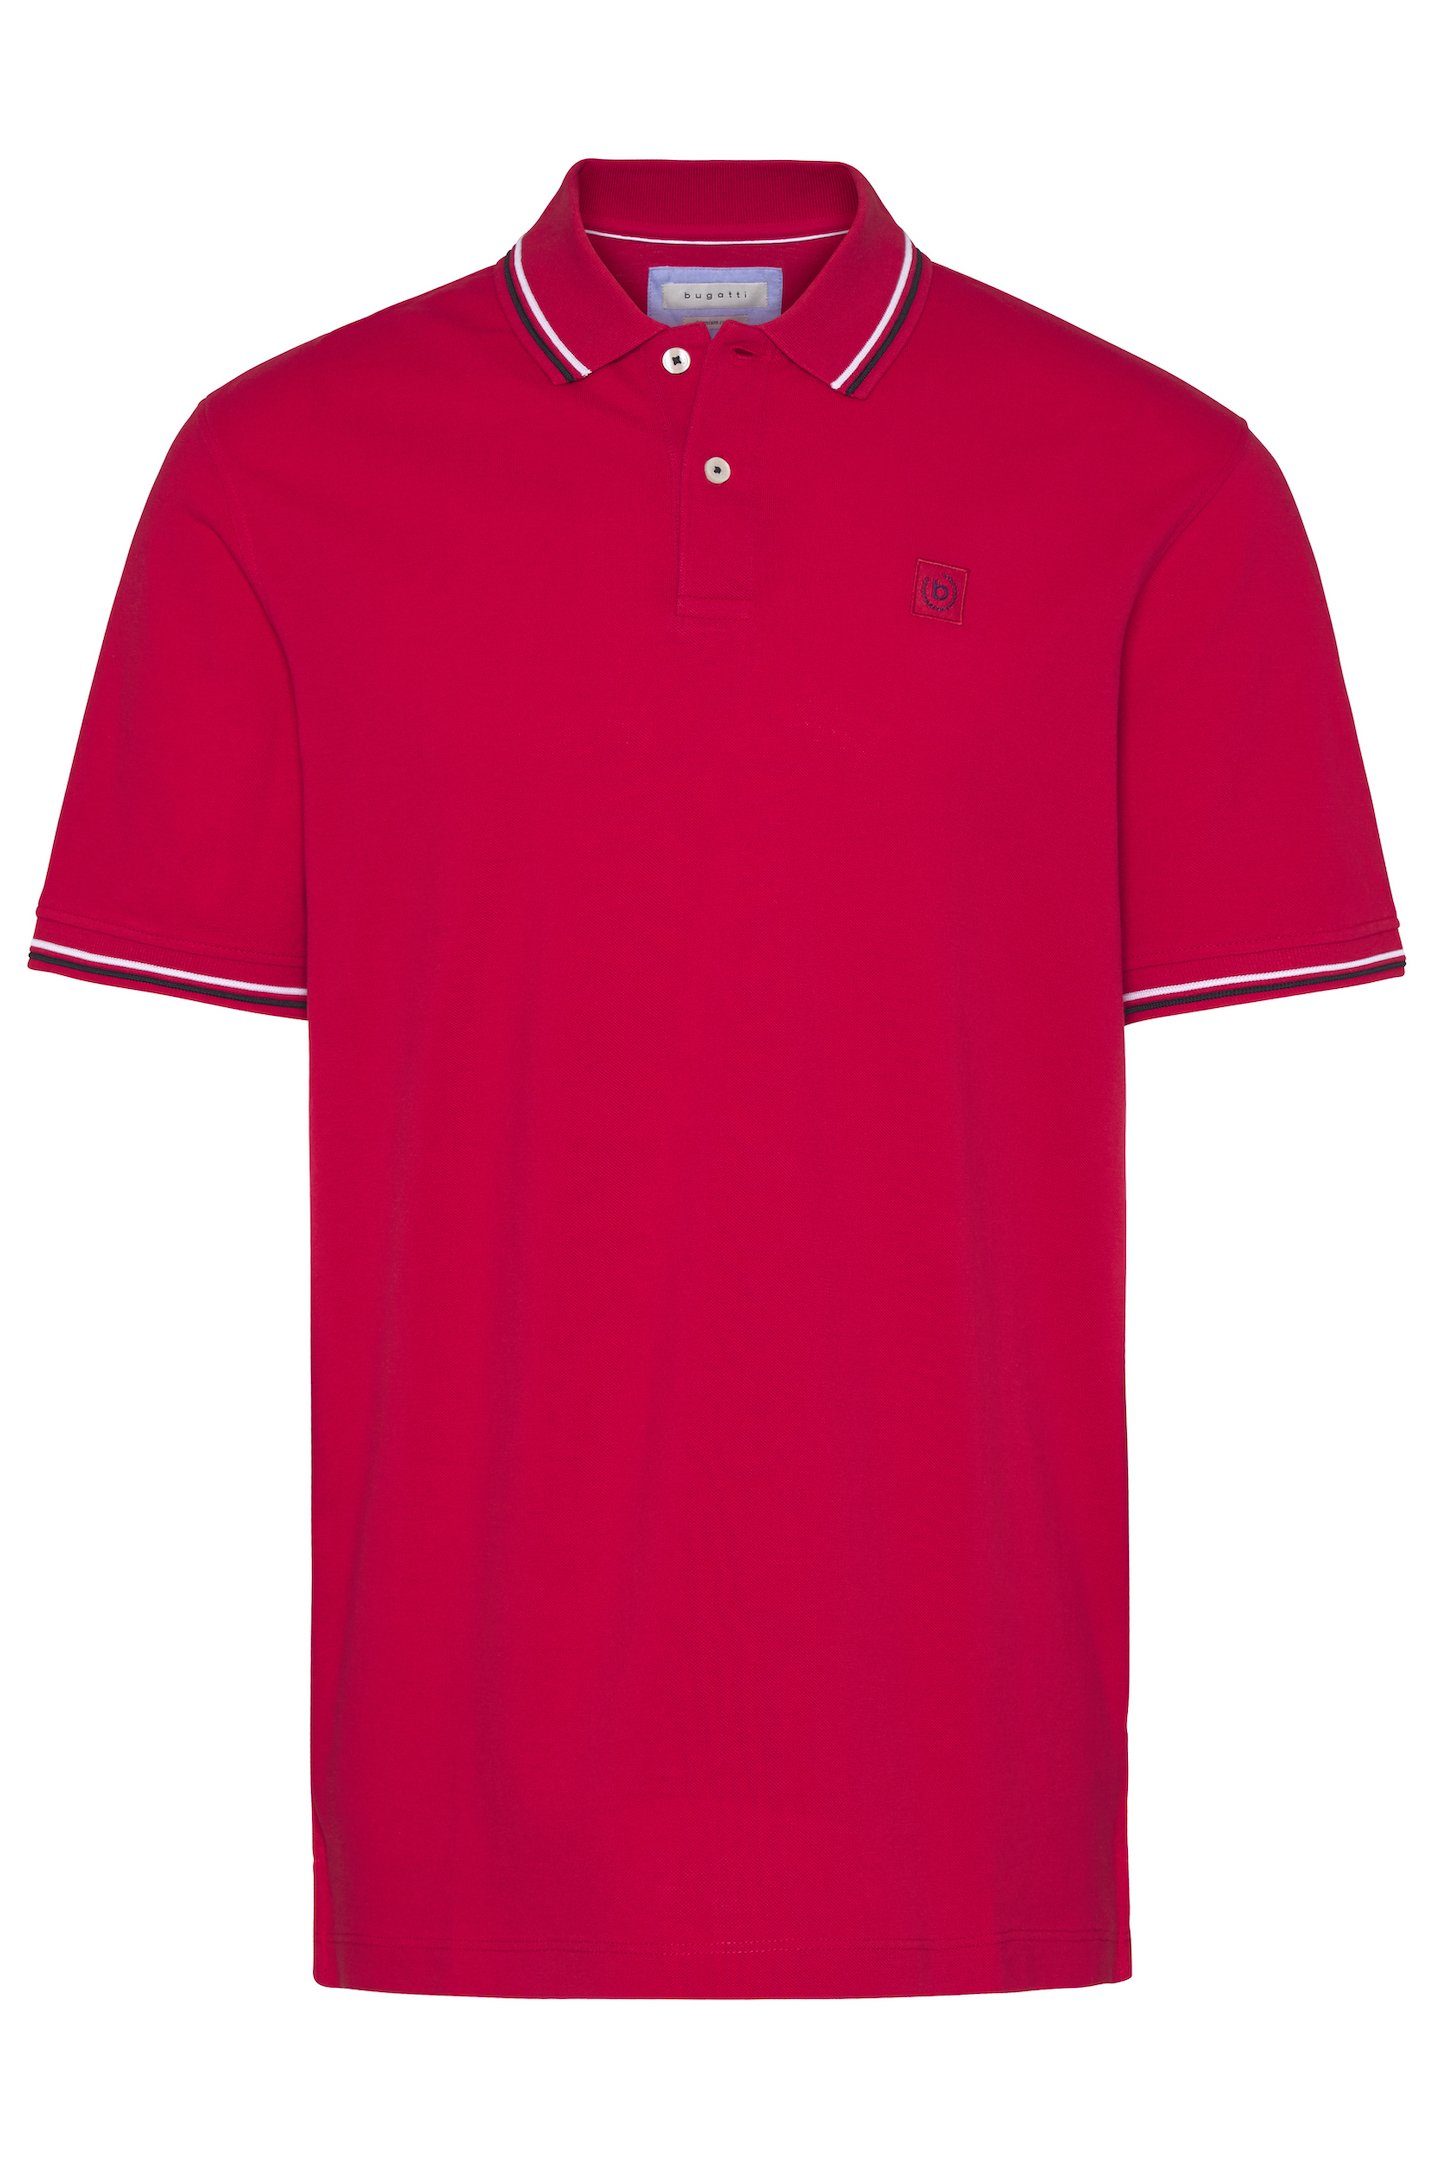 bugatti Poloshirt mit Kontraststreifen an Kragen und Ärmelbündchen rot